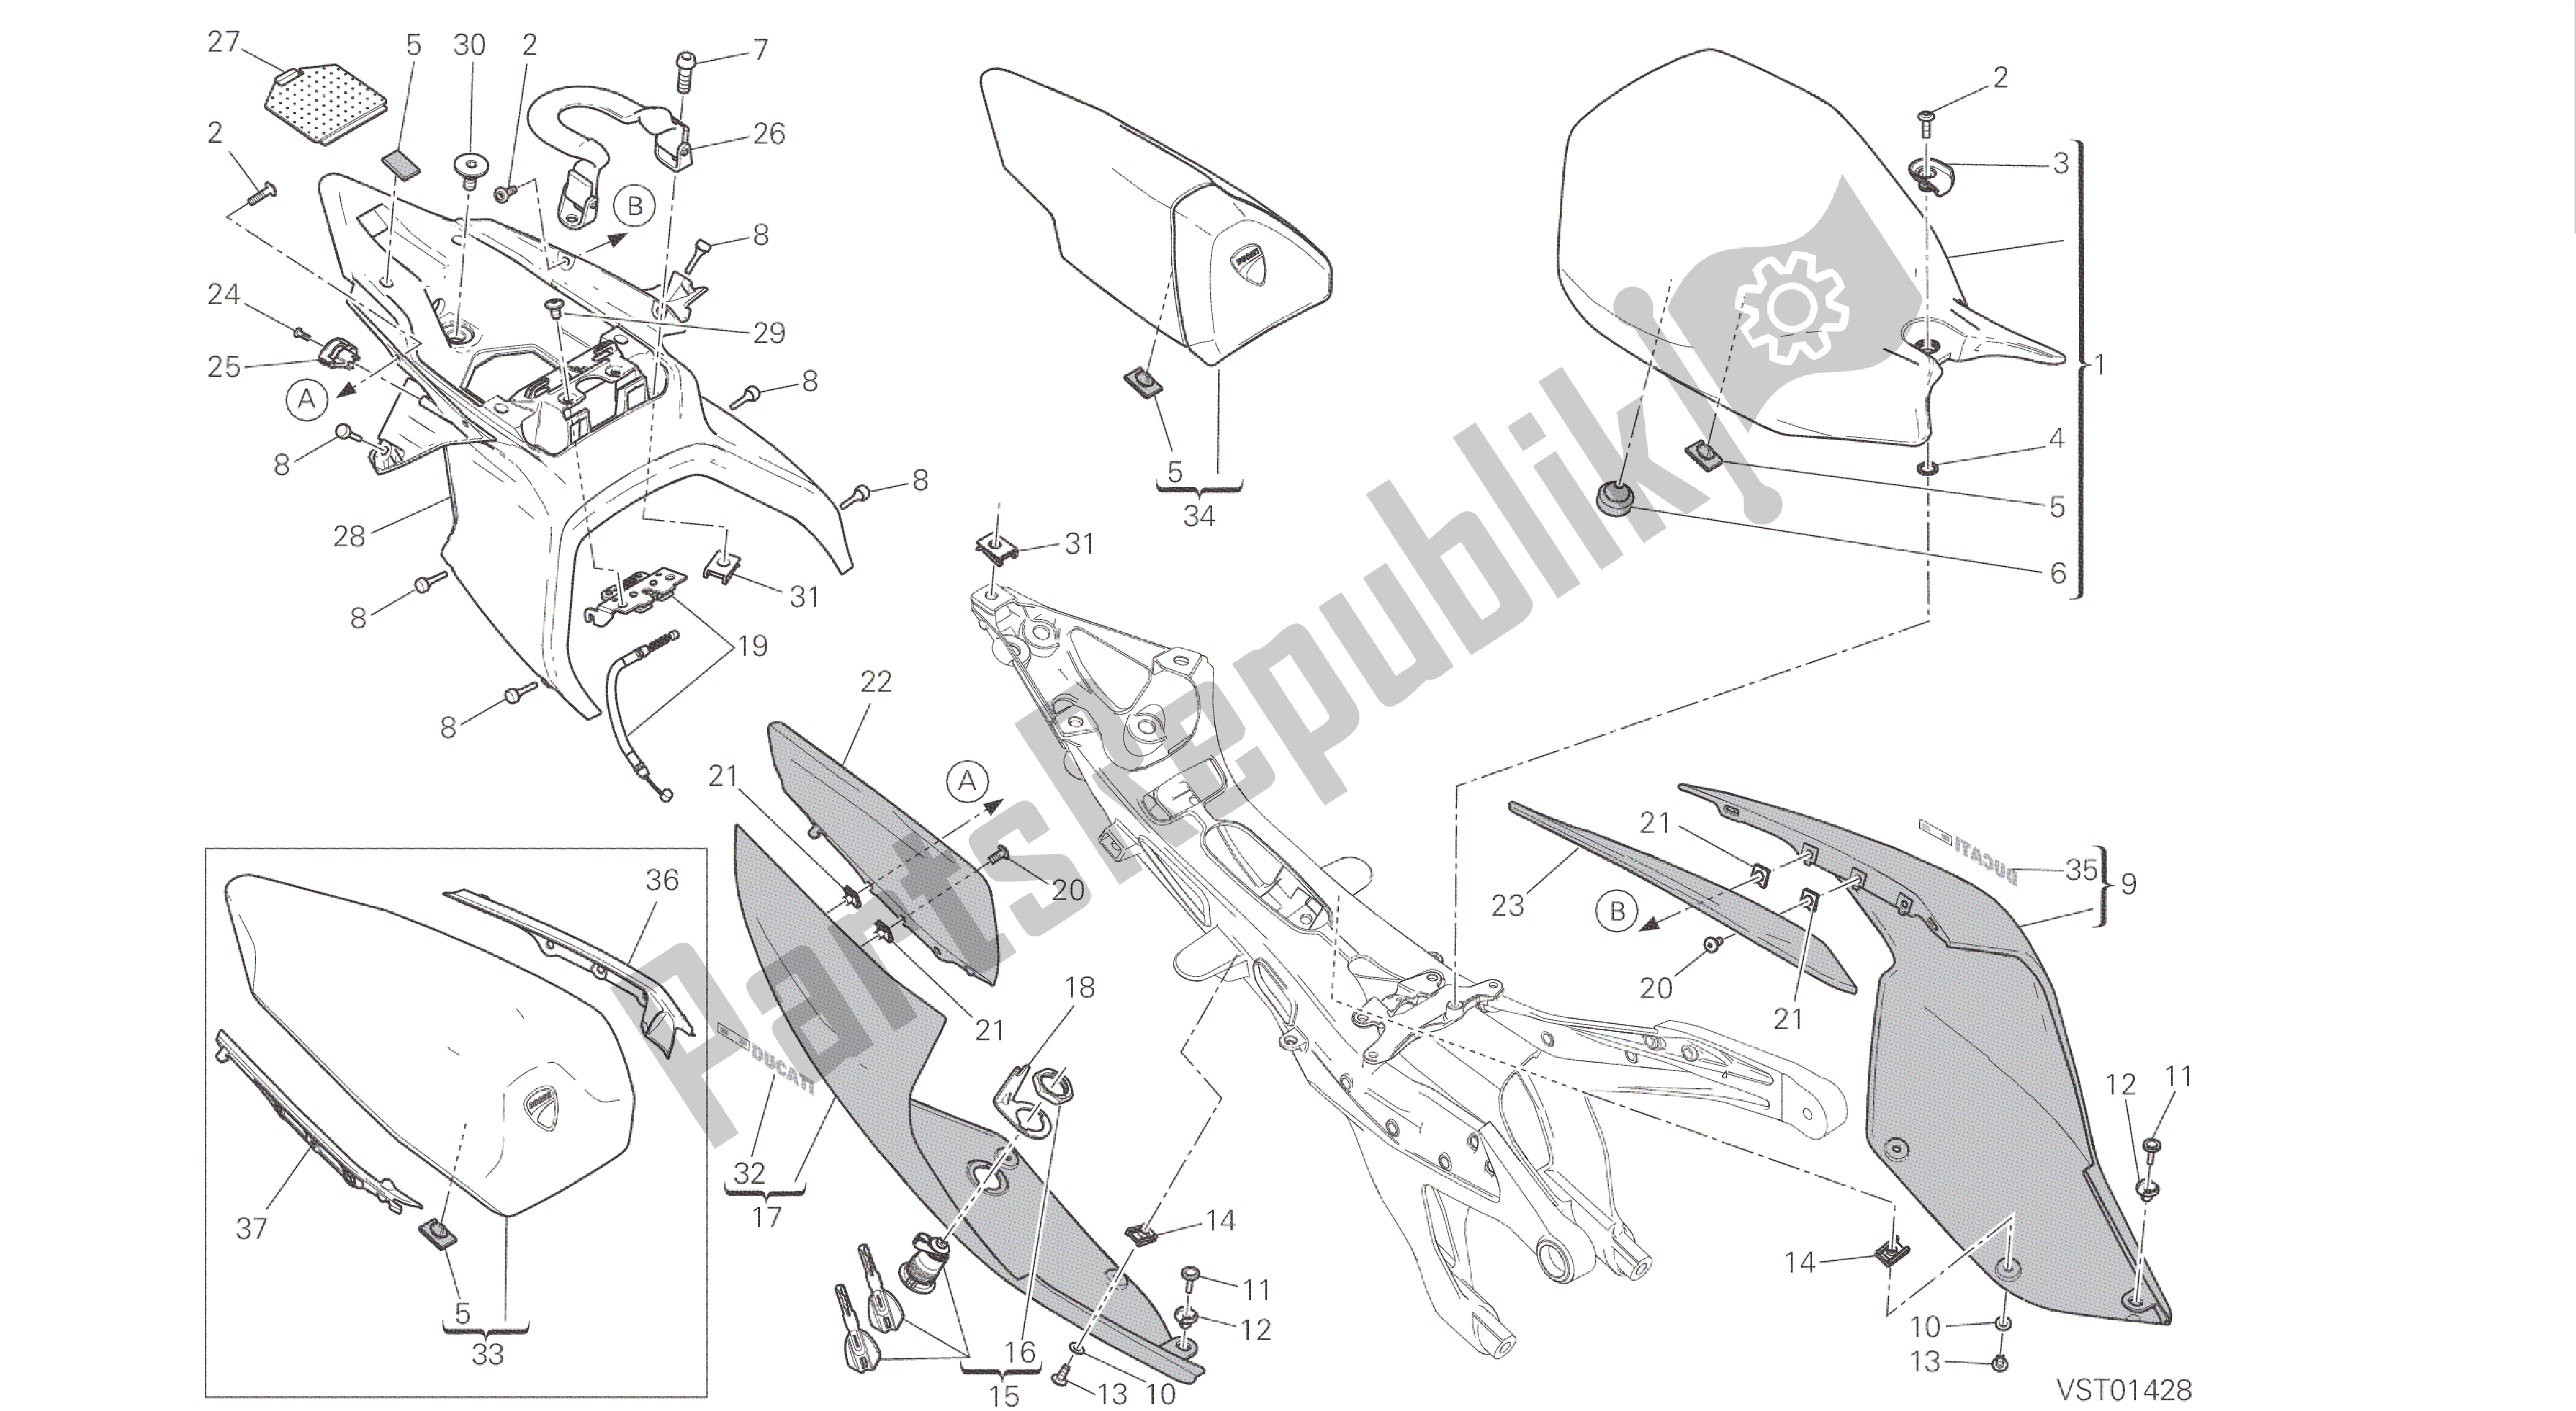 Todas las partes para Dibujo 033 - Asiento [mod: 1299s; Xst: Marco De Grupo Aus, Eur, Fra, Jap, Twn] de Ducati Panigale S ABS 1299 2016